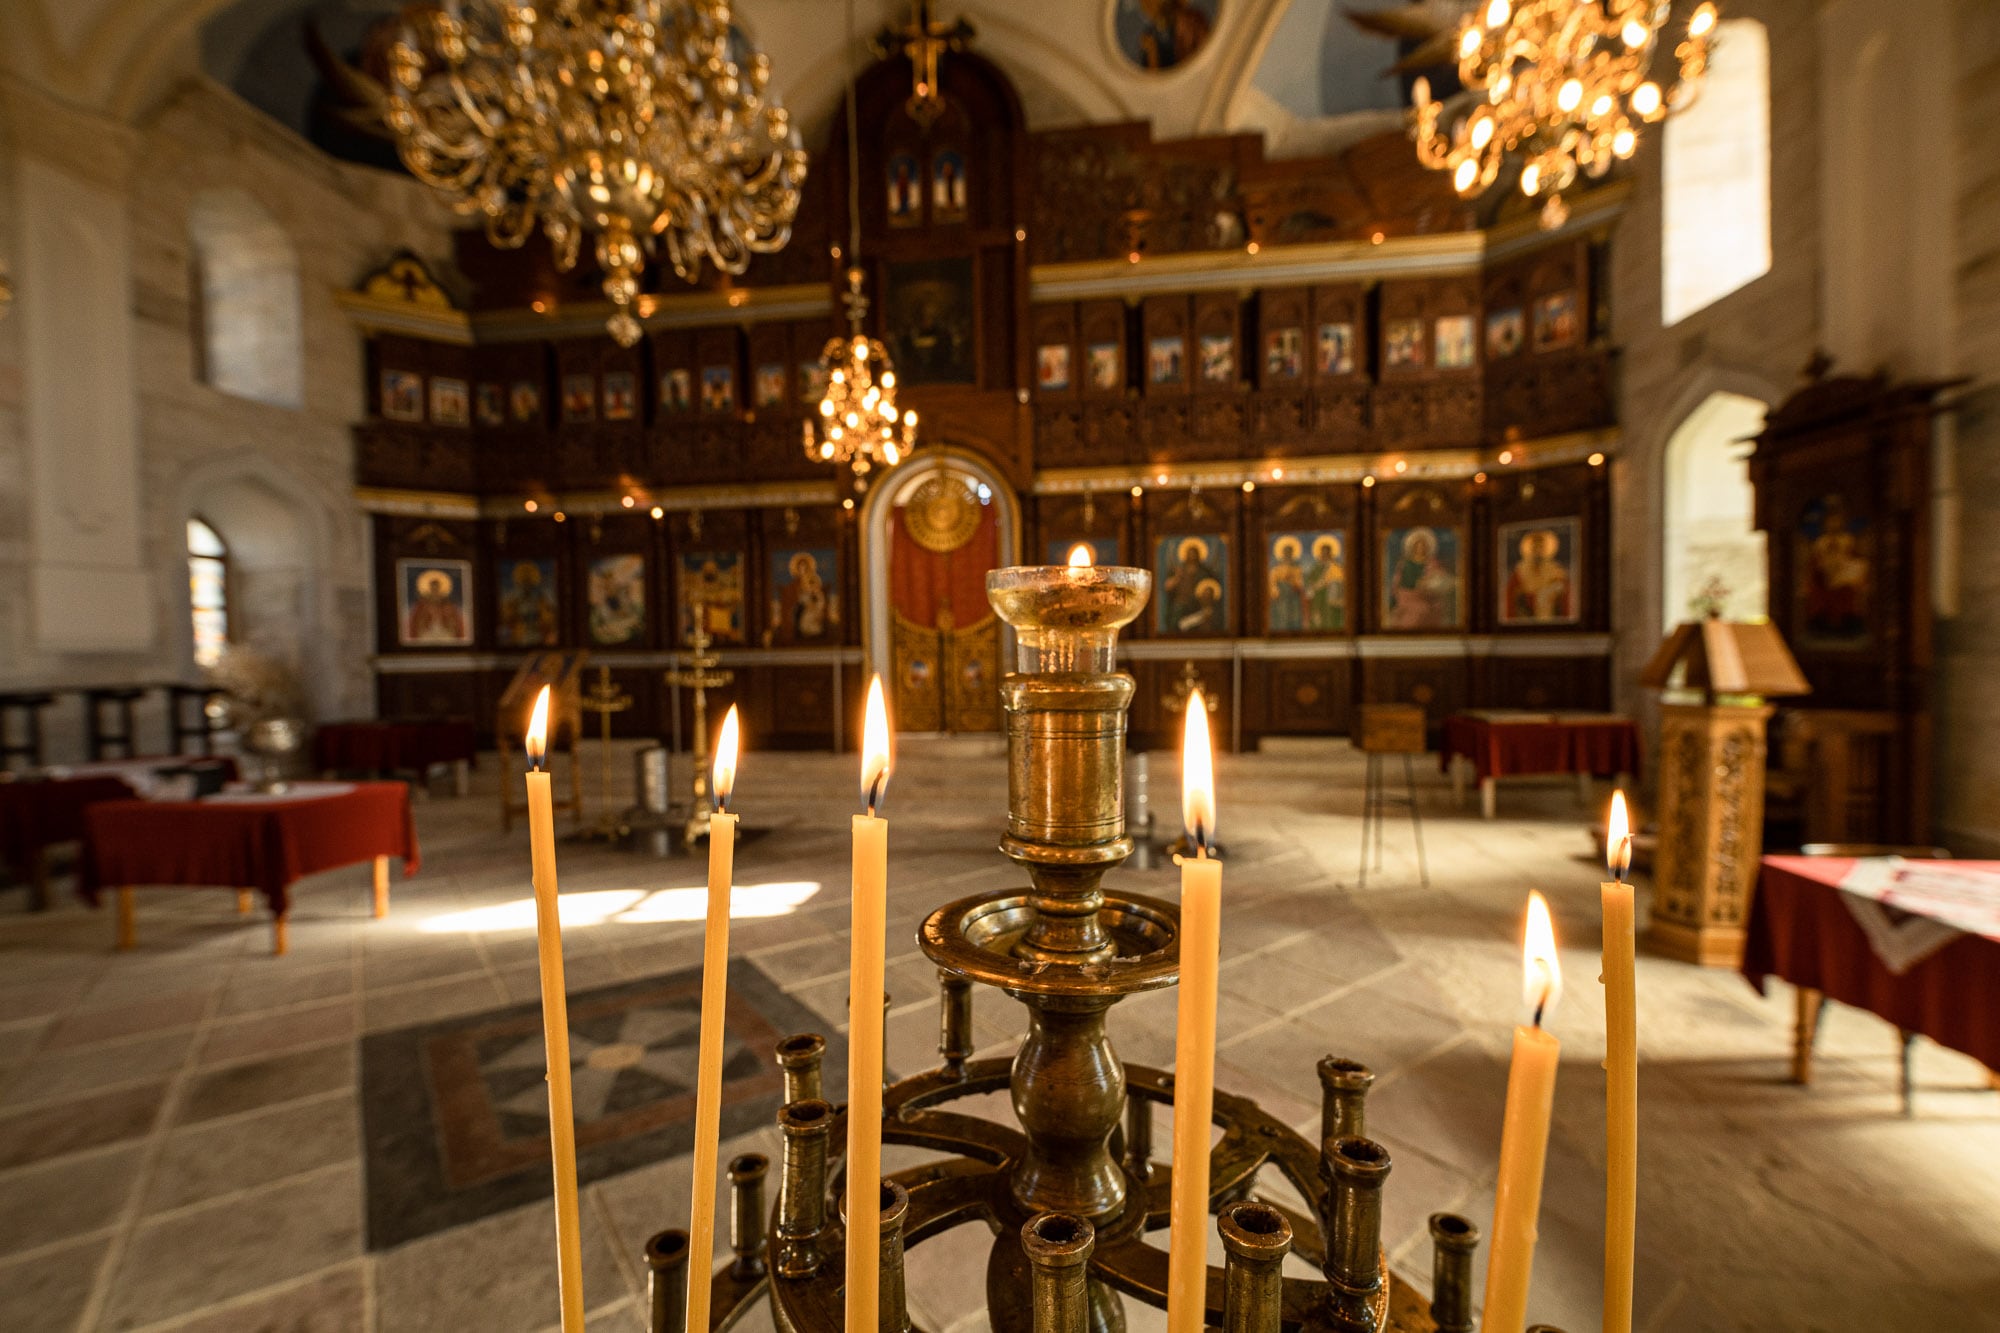 candles in the Uzundzhovo church